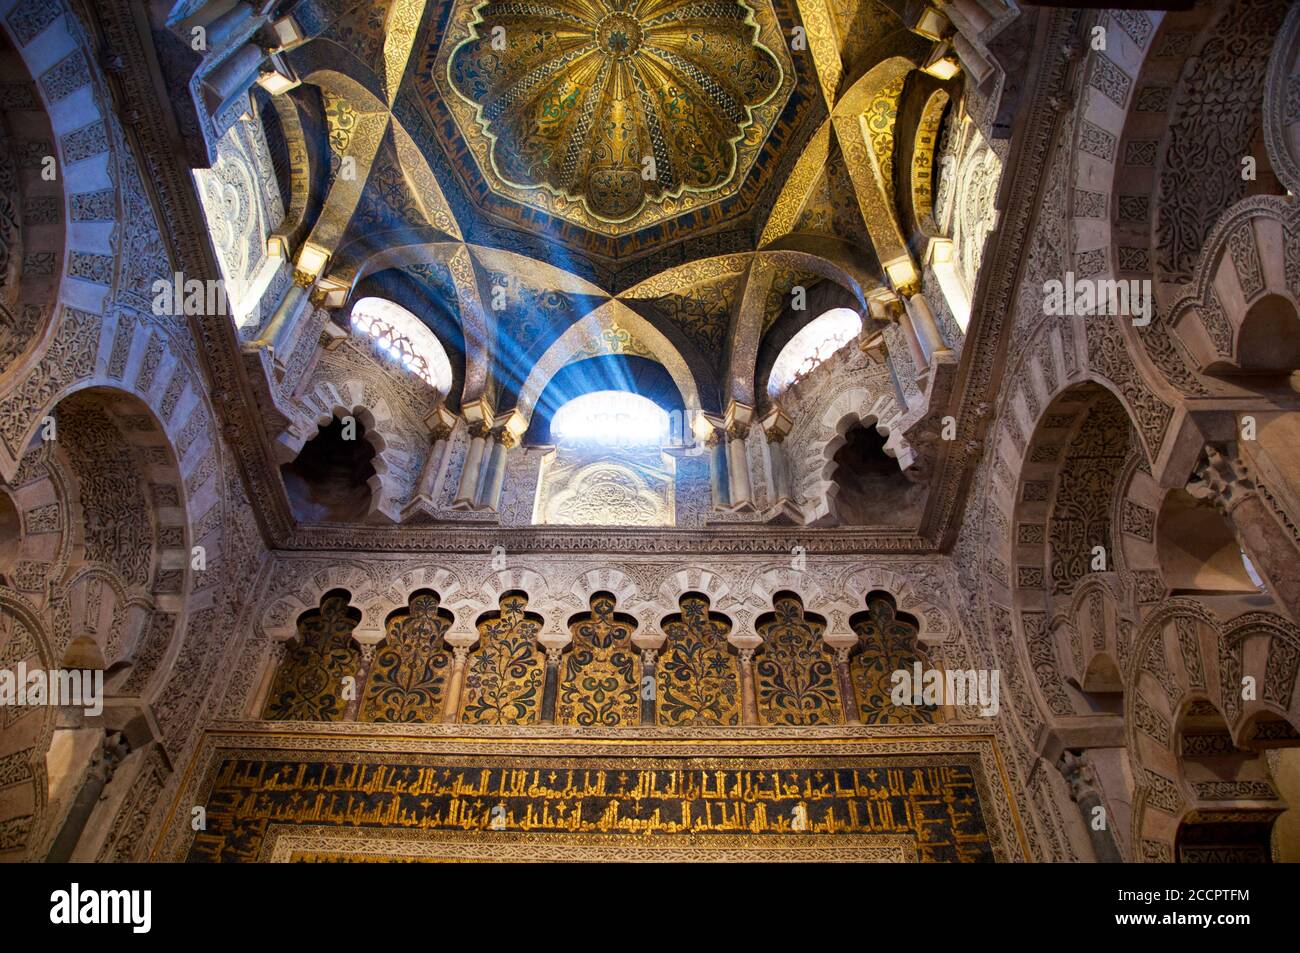 Carreaux de dôme bleu en nid d'abeilles décorés d'étoiles à la Grande Mosquée de Cordoue, Espagne. Banque D'Images